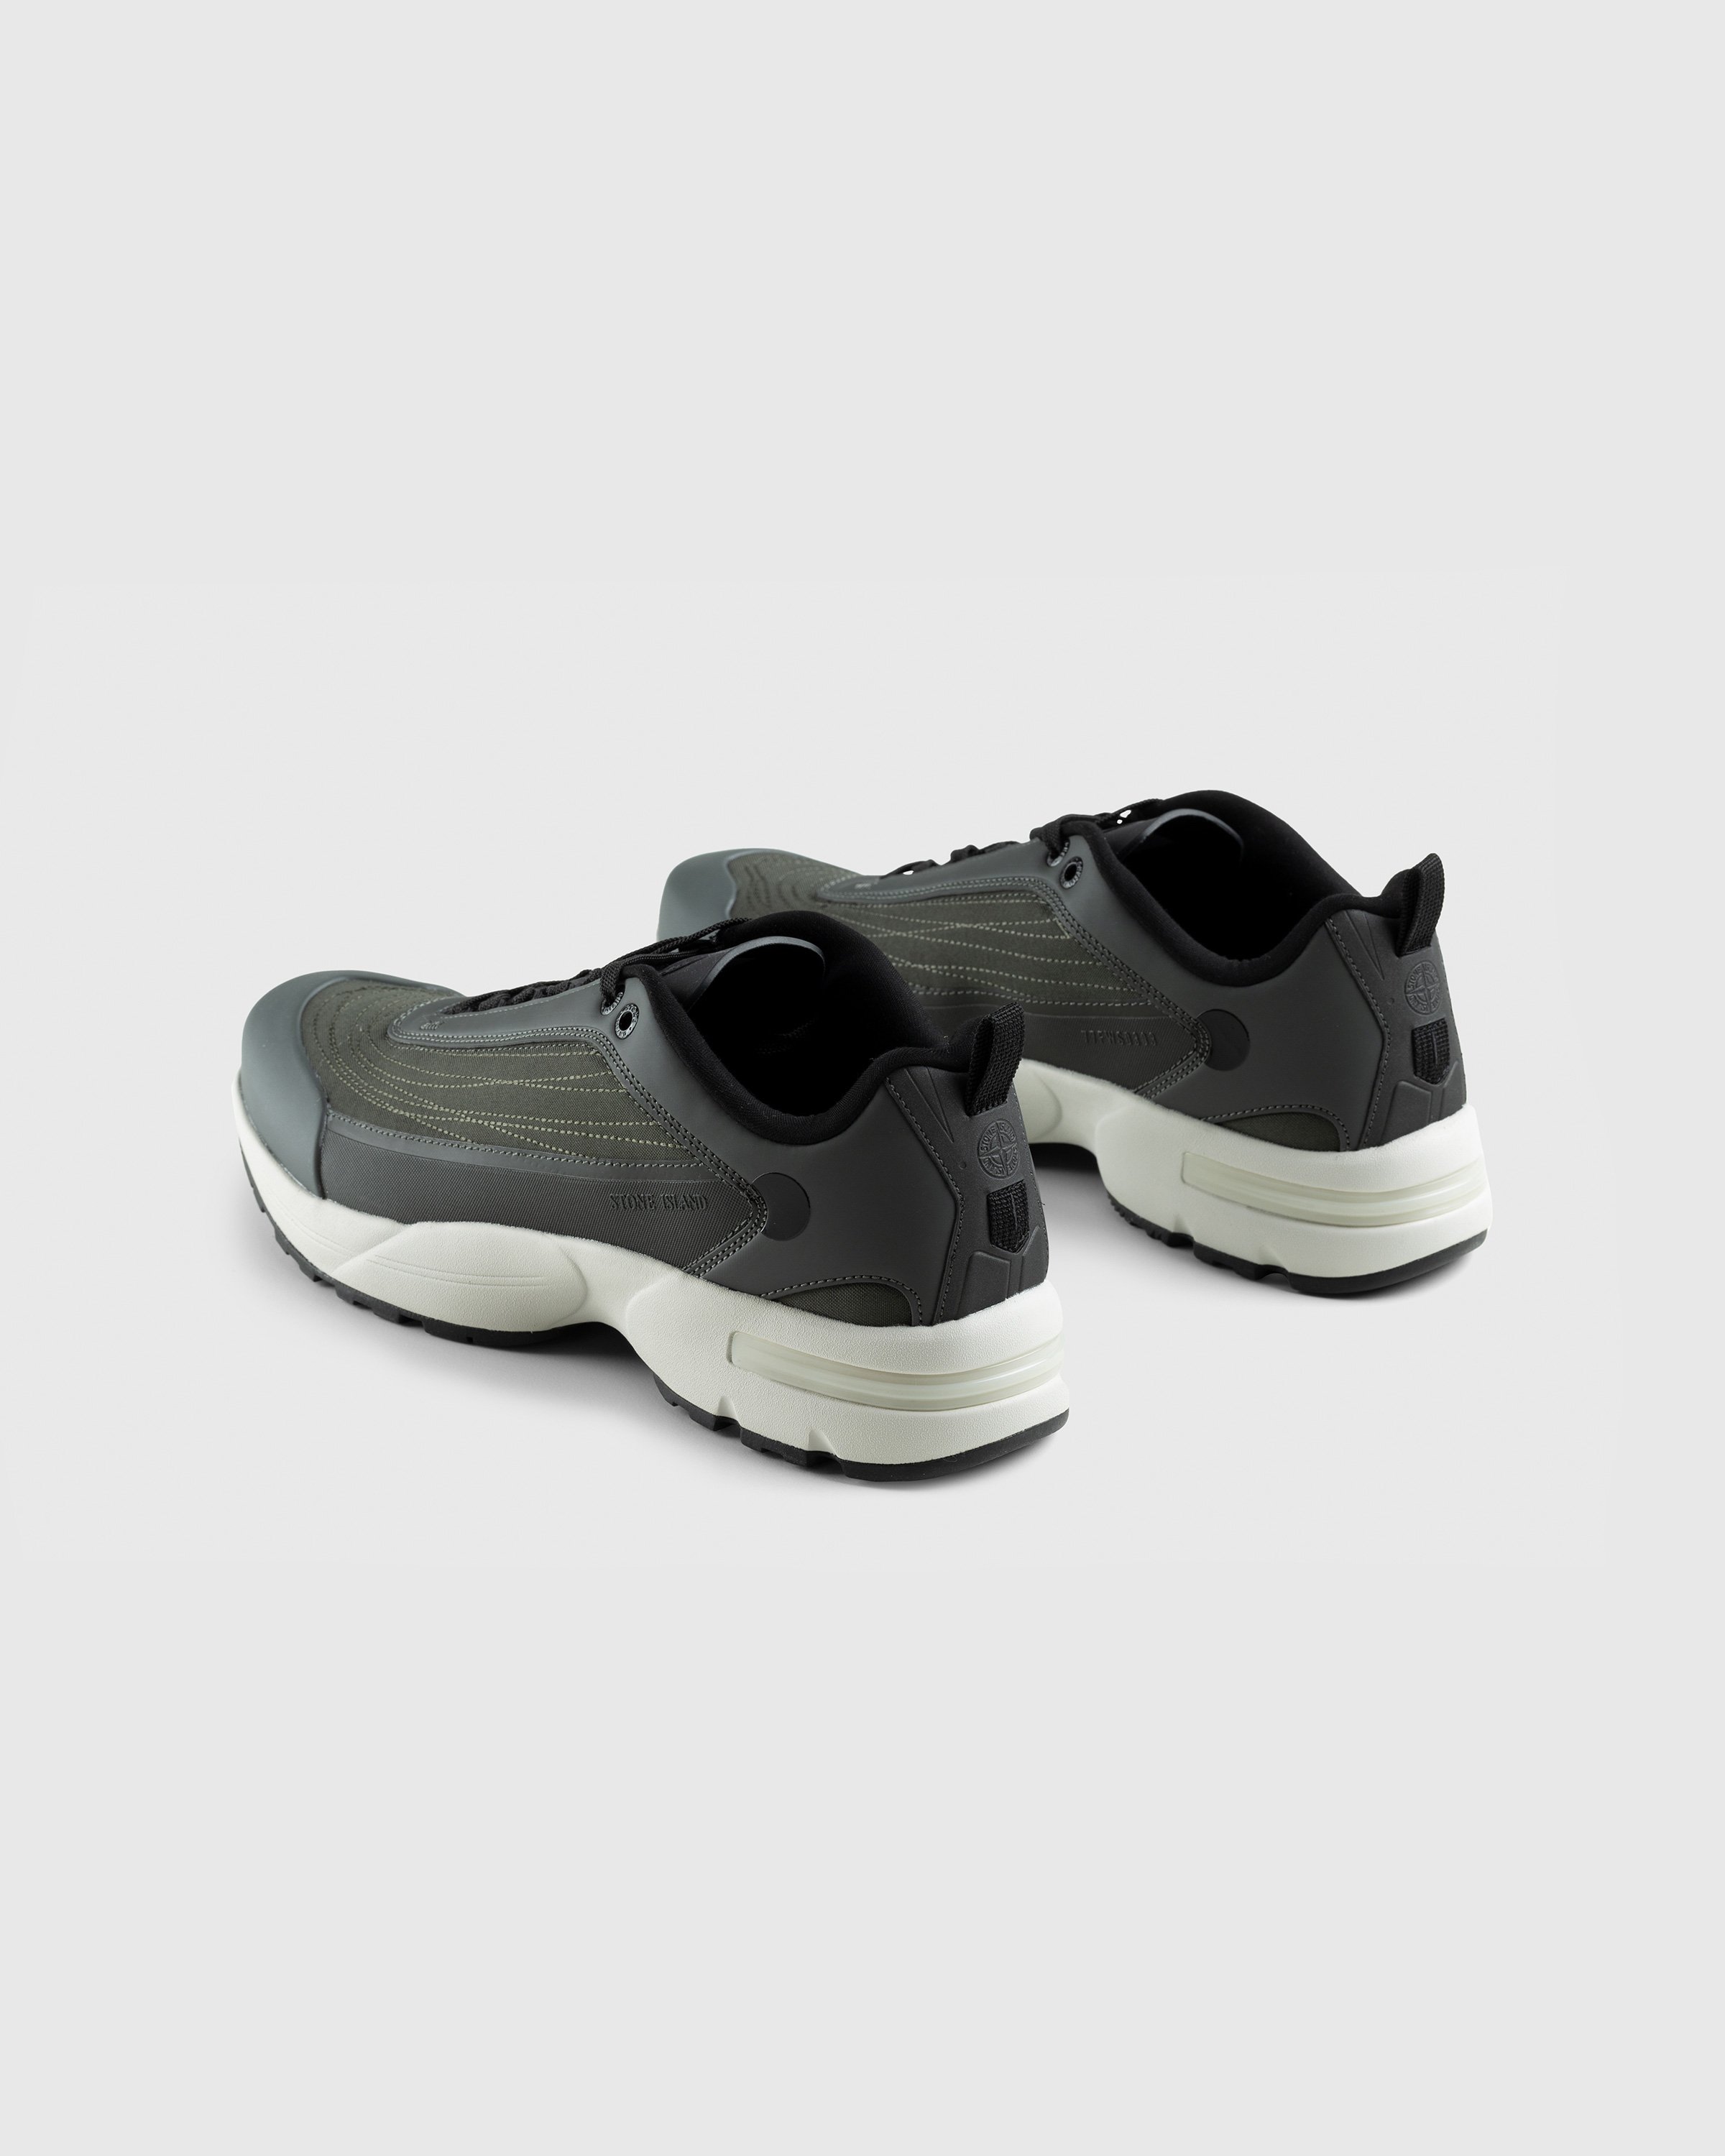 Stone Island - Grime Sneaker Black - Footwear - Black - Image 4